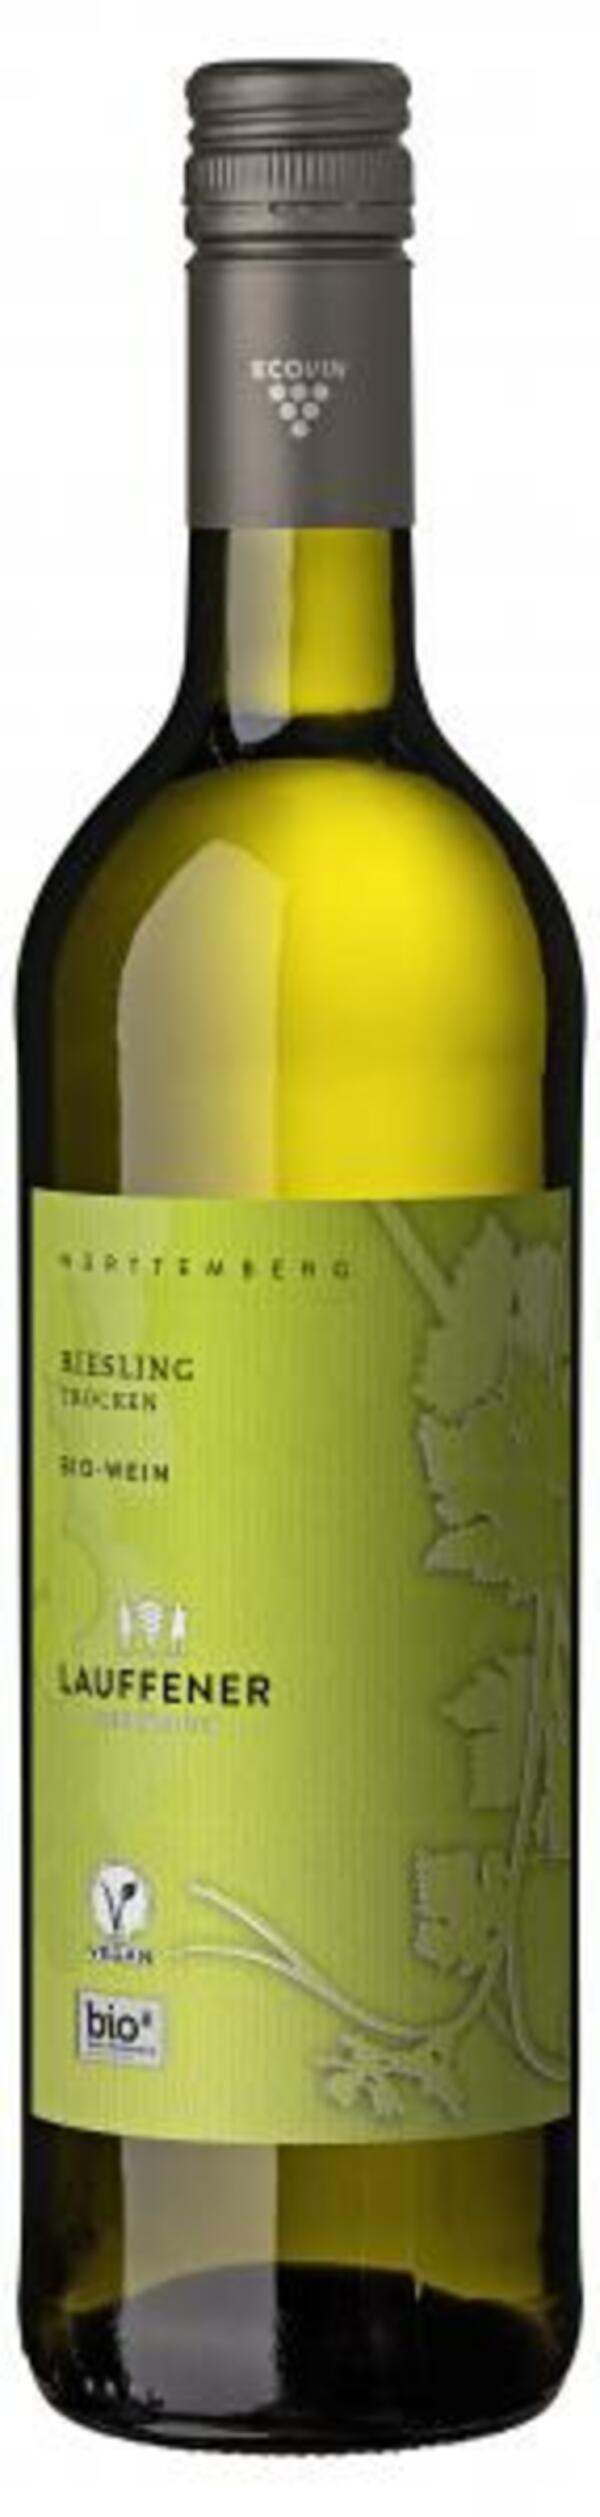 Bild 1 von Lauffener Weingärtner Bio Riesling Weißwein trocken